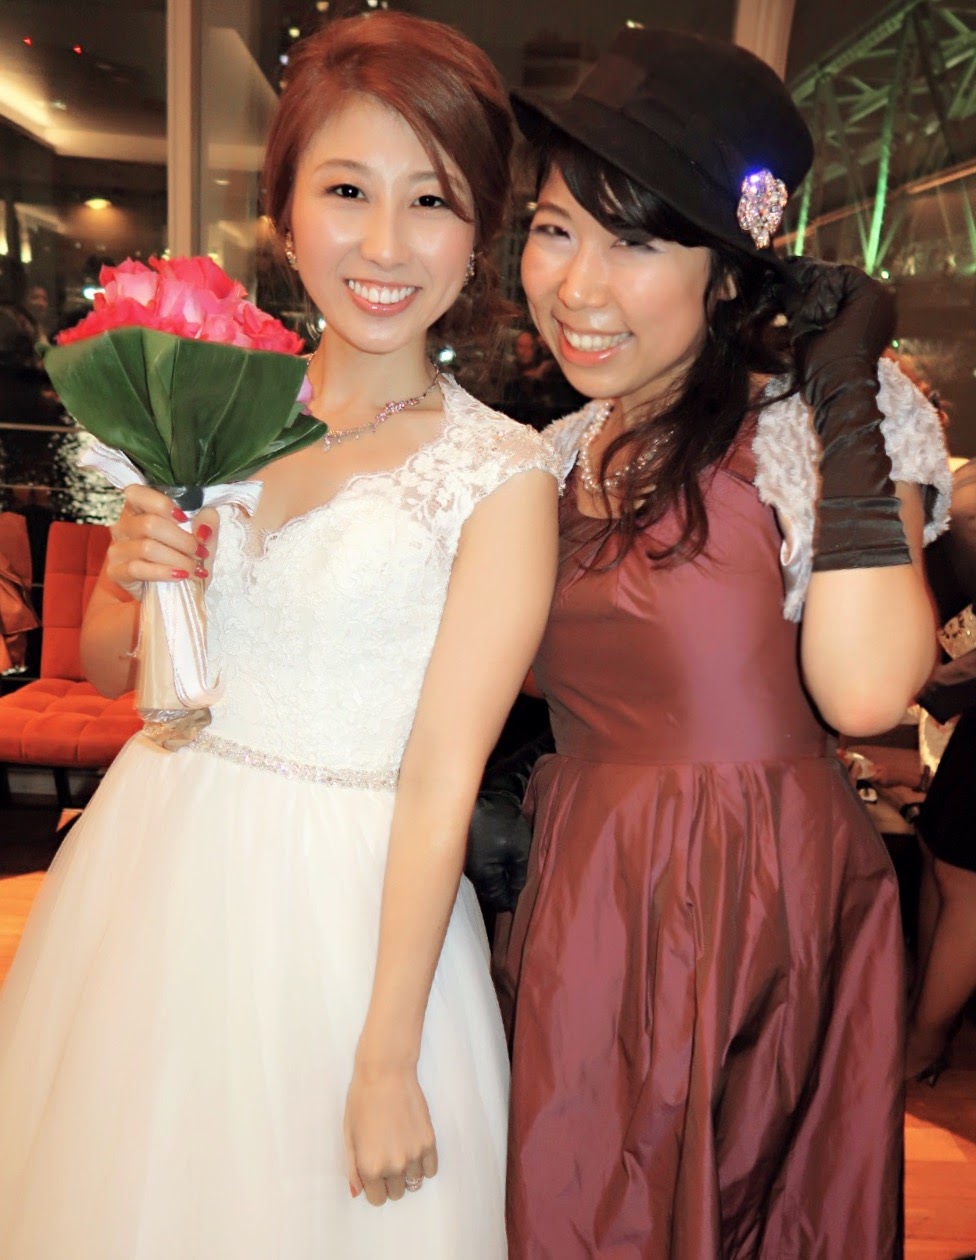 ちかちゃん結婚式 Wedding Of Chika Yoshida A K A Top Youtuber Bilingirl Ami Go Travel And Lifestyle Blog From Japan